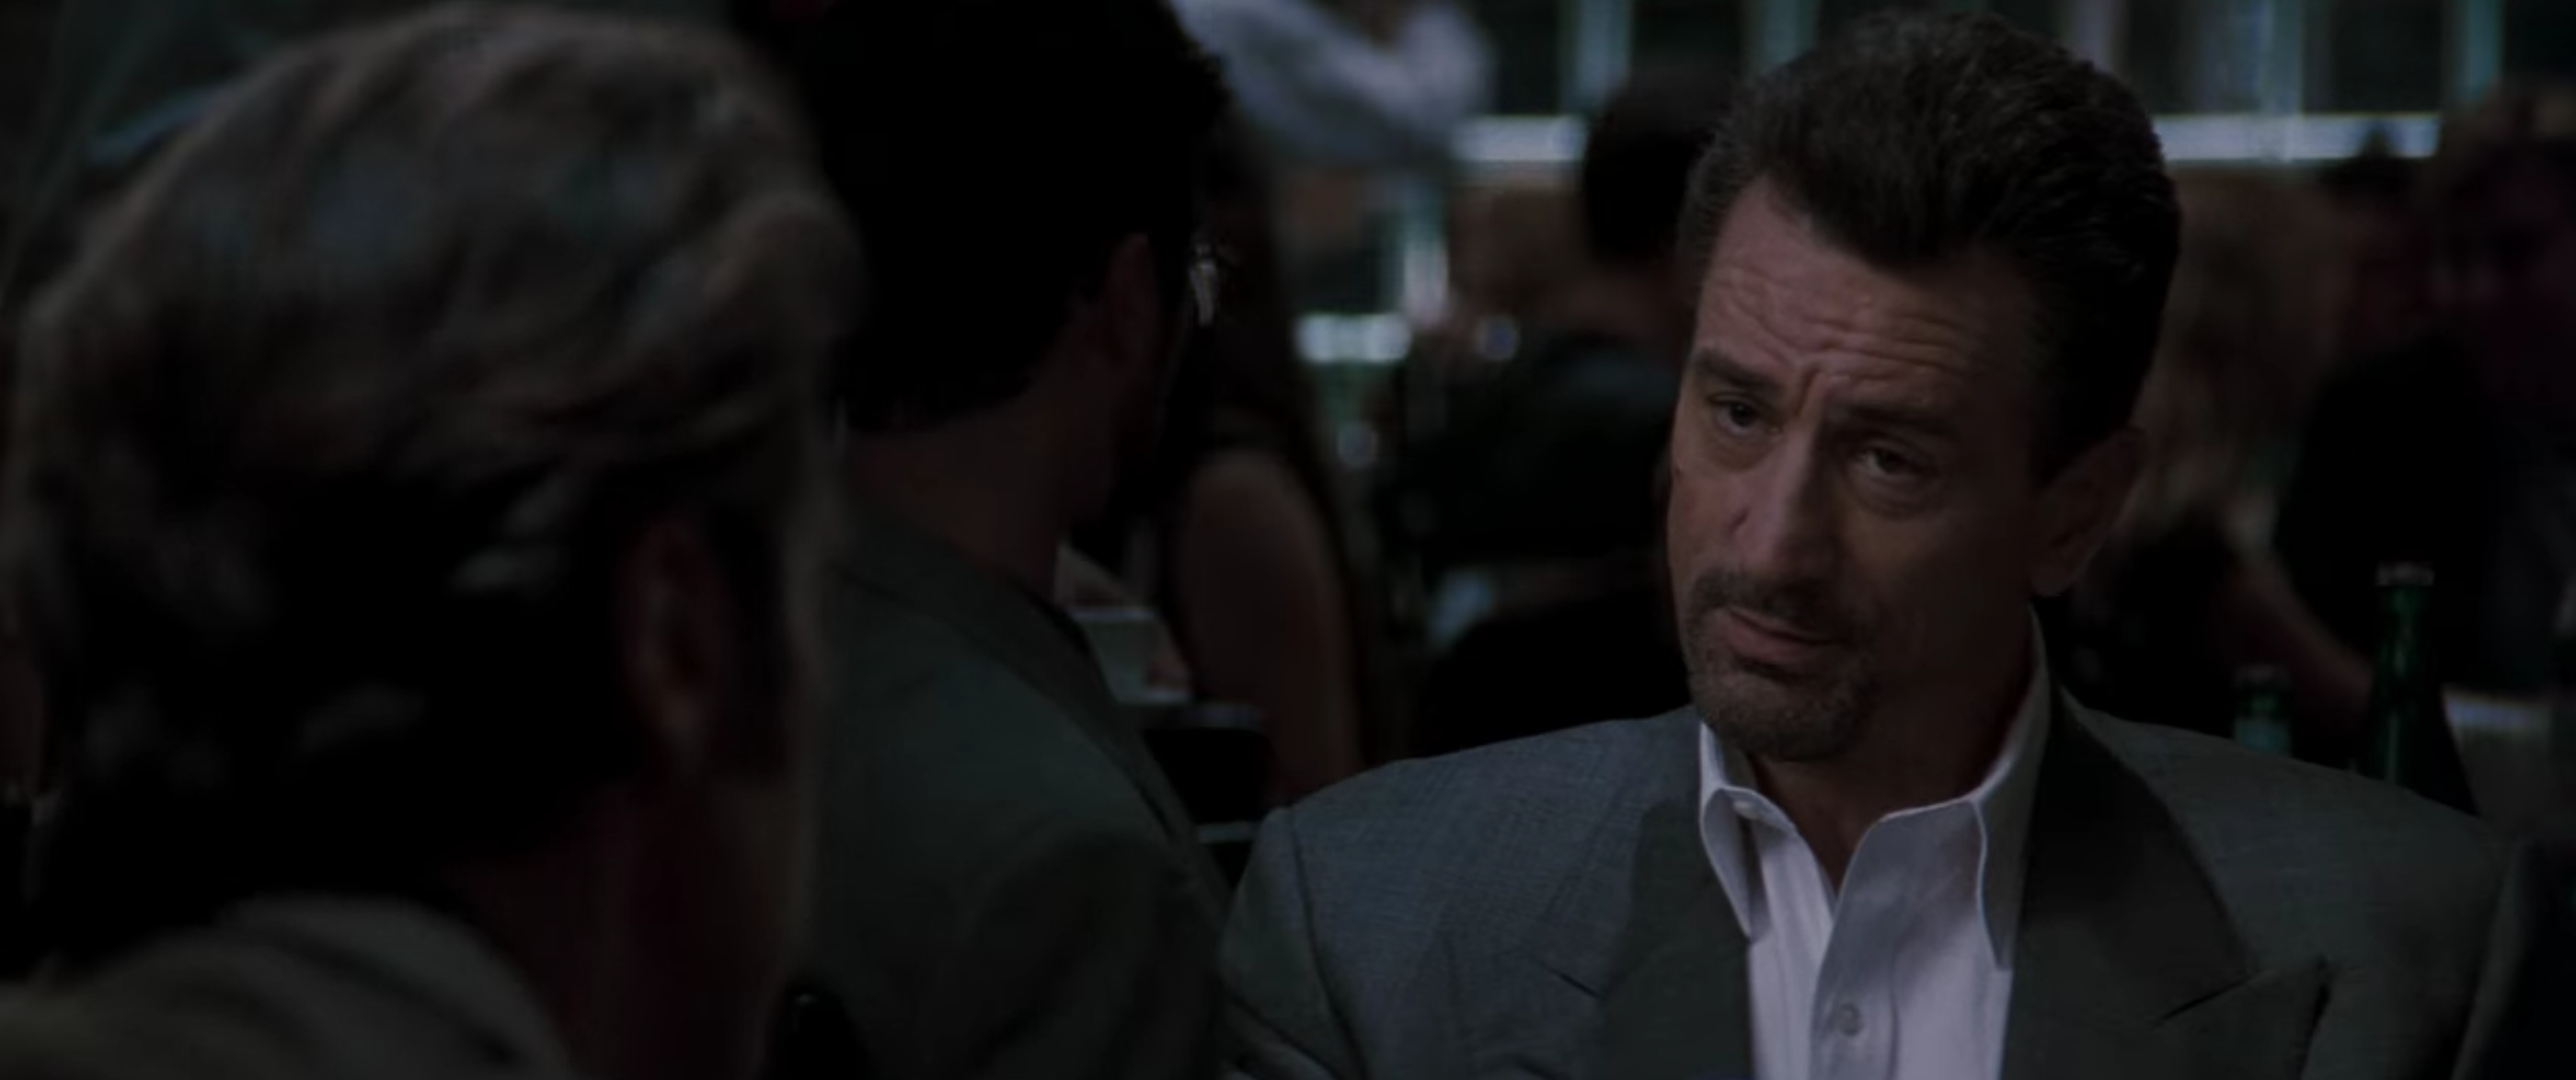 Heat : Michael Mann raconte la mise en scène de la relation entre Robert De Niro et Al Pacino